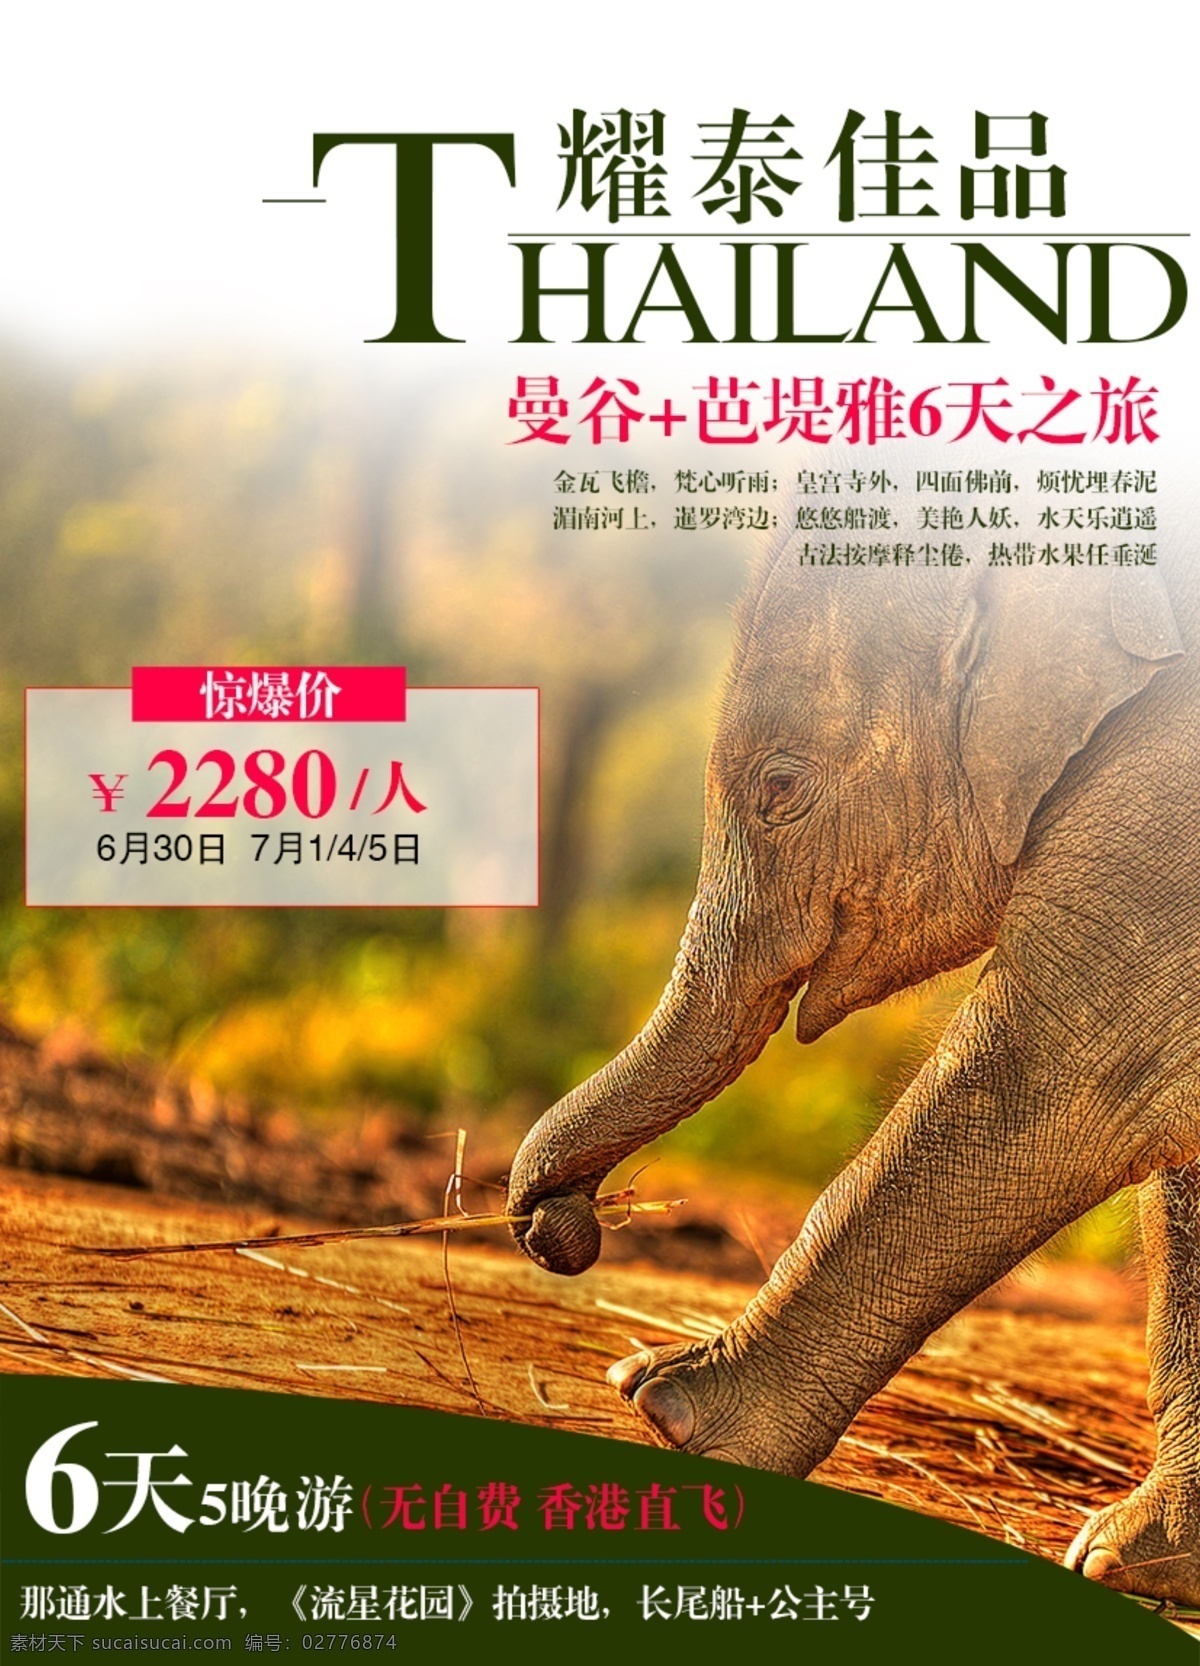 泰国 旅游 惊爆 价 限时特价 泰国曼谷 曼谷芭提雅 微 信 广告